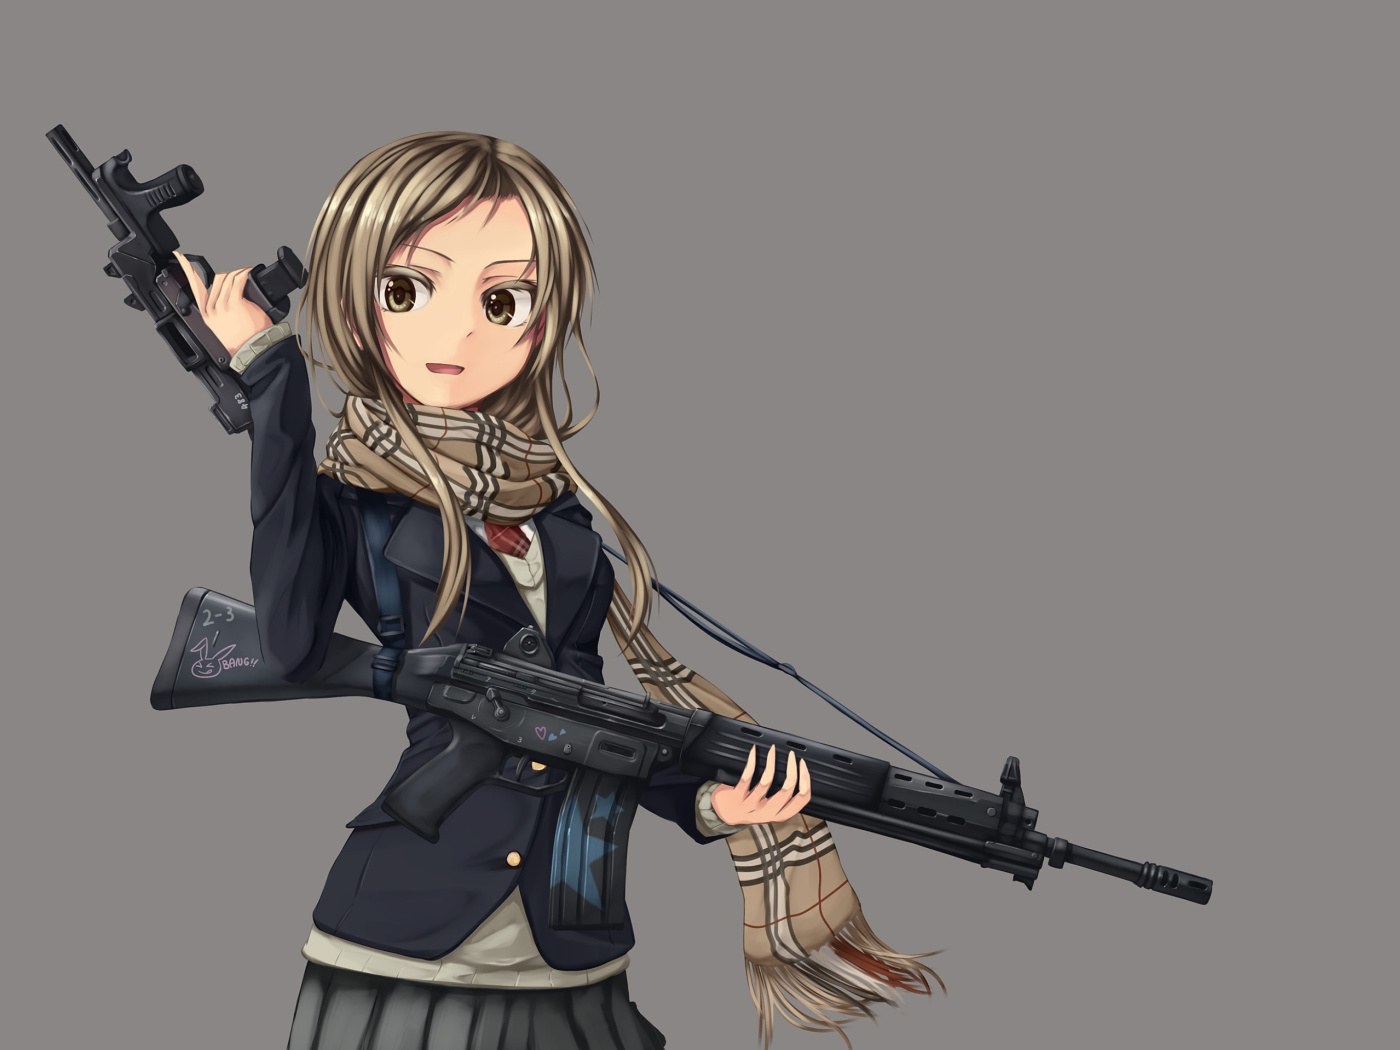 Обои Anime girl with gun 1400x1050